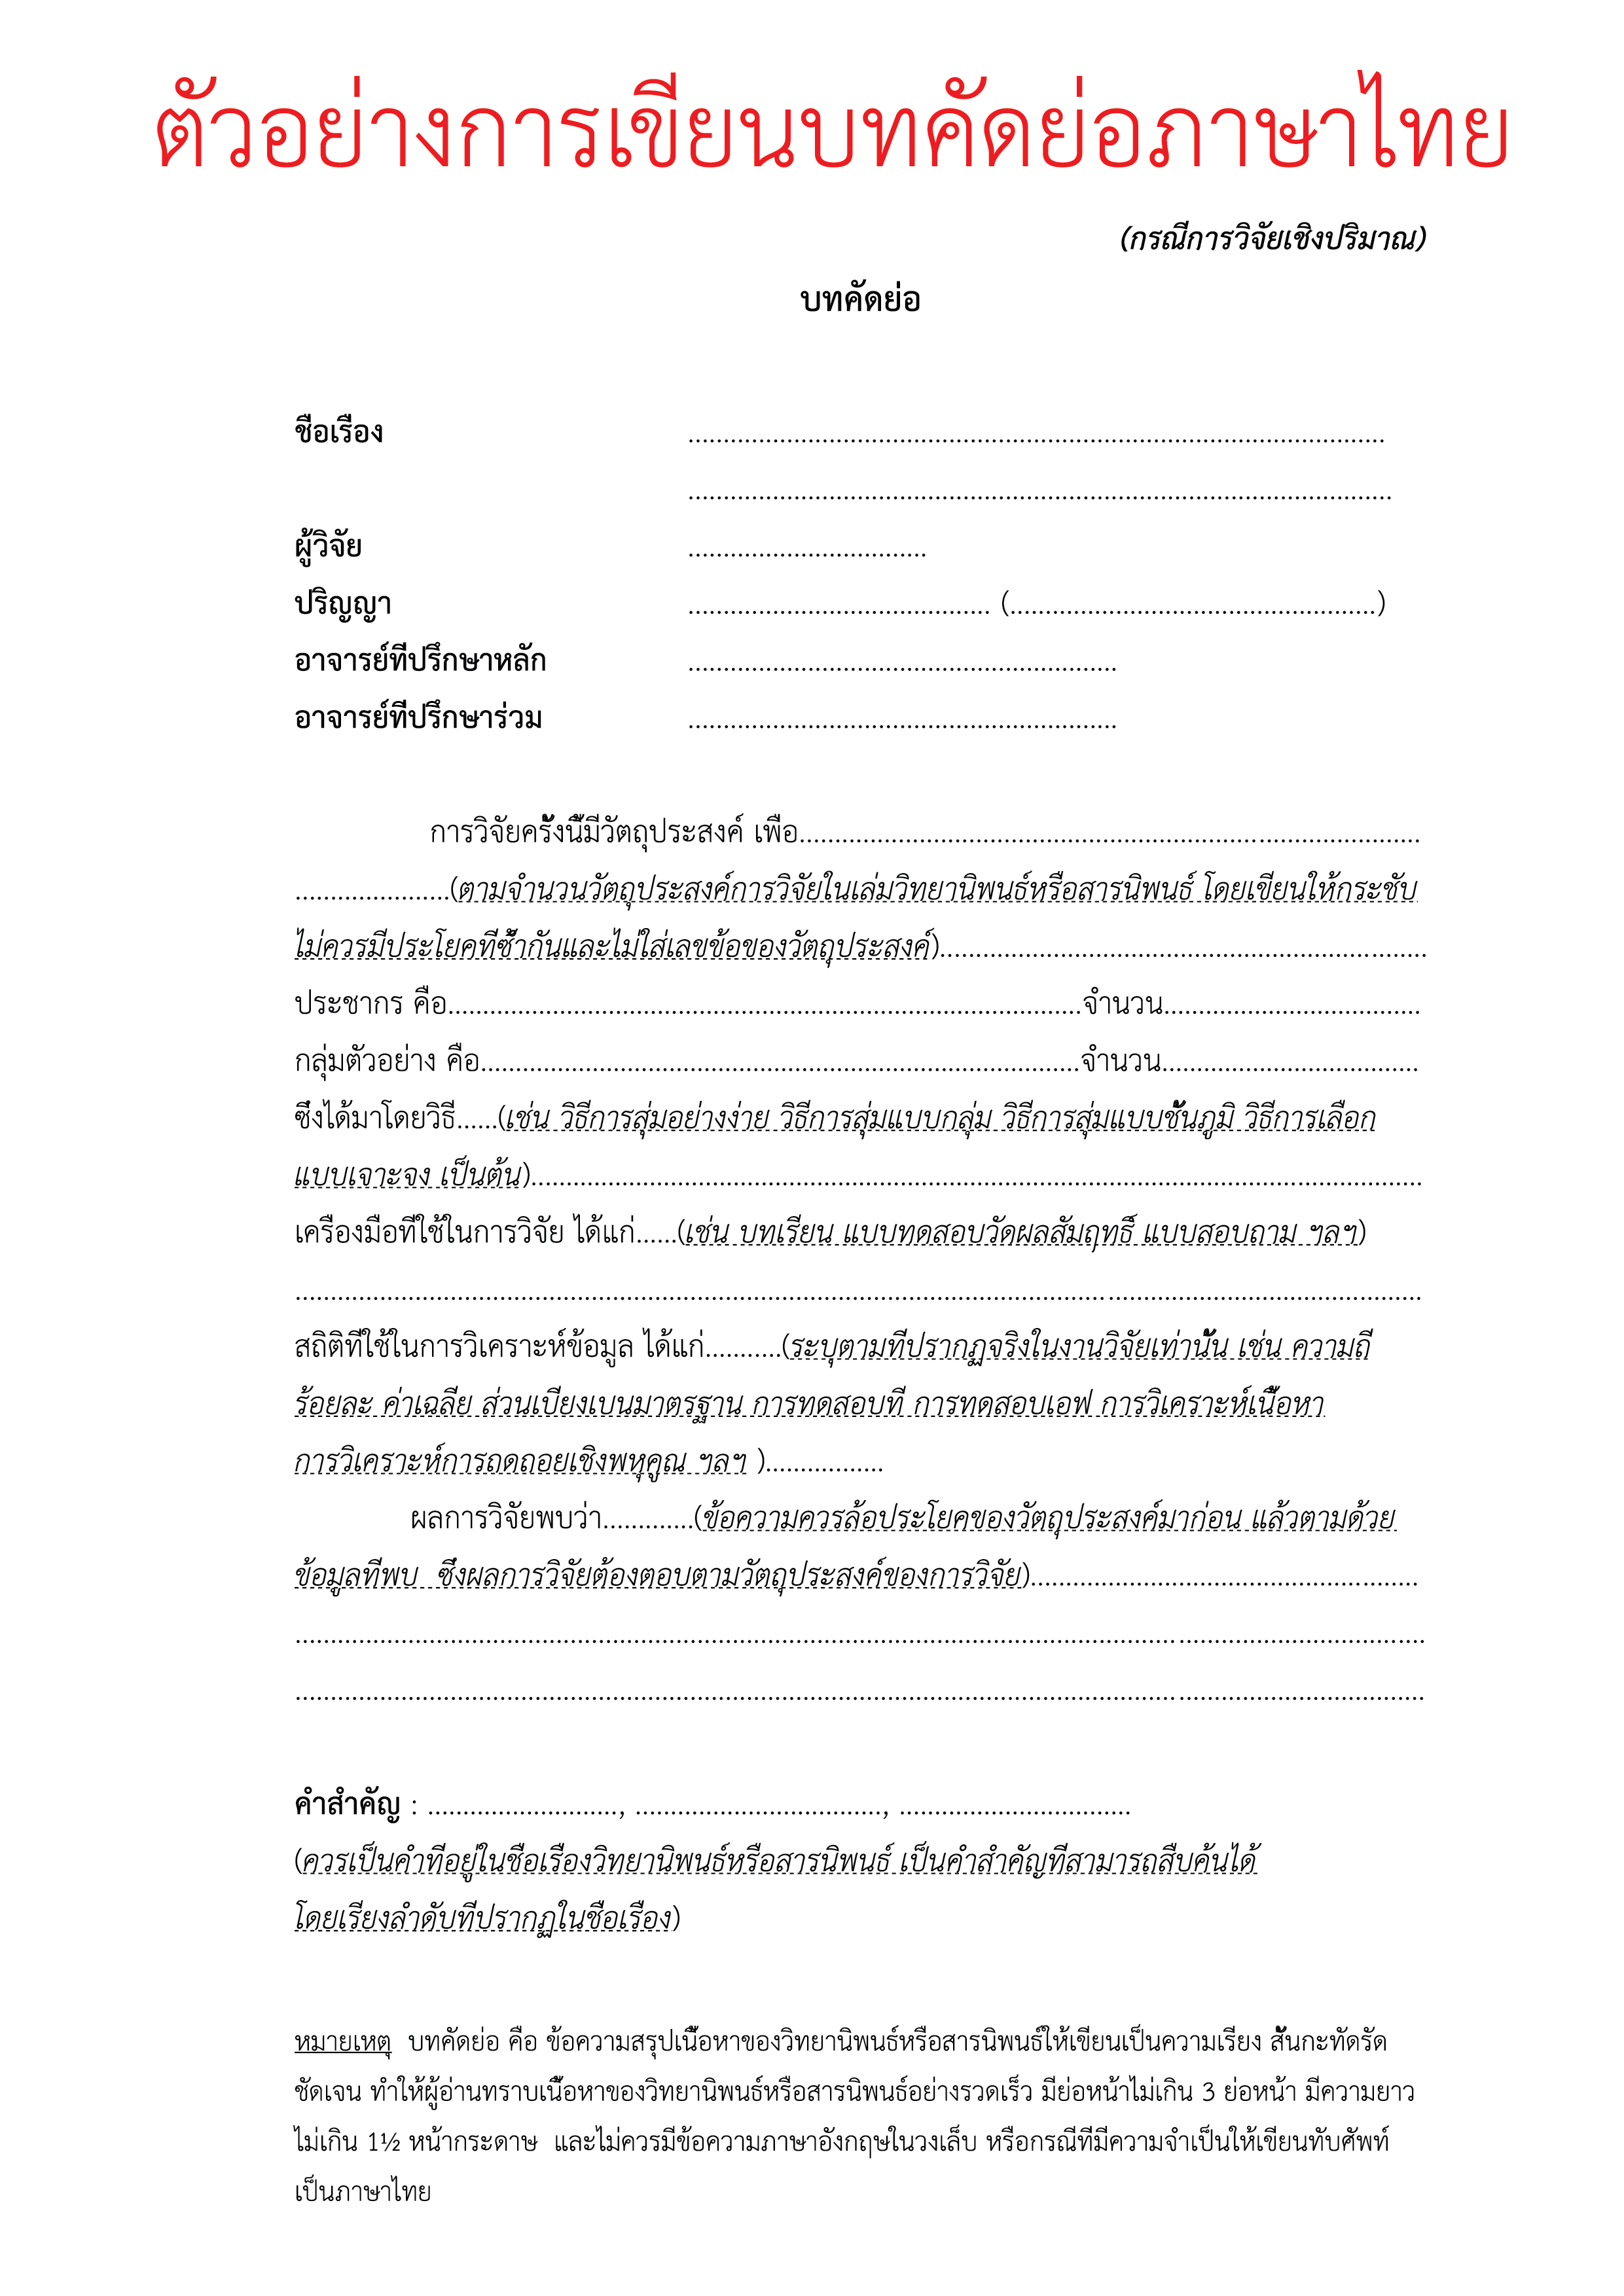 ตัวอย่างการเขียนบทคัดย่อภาษาไทย